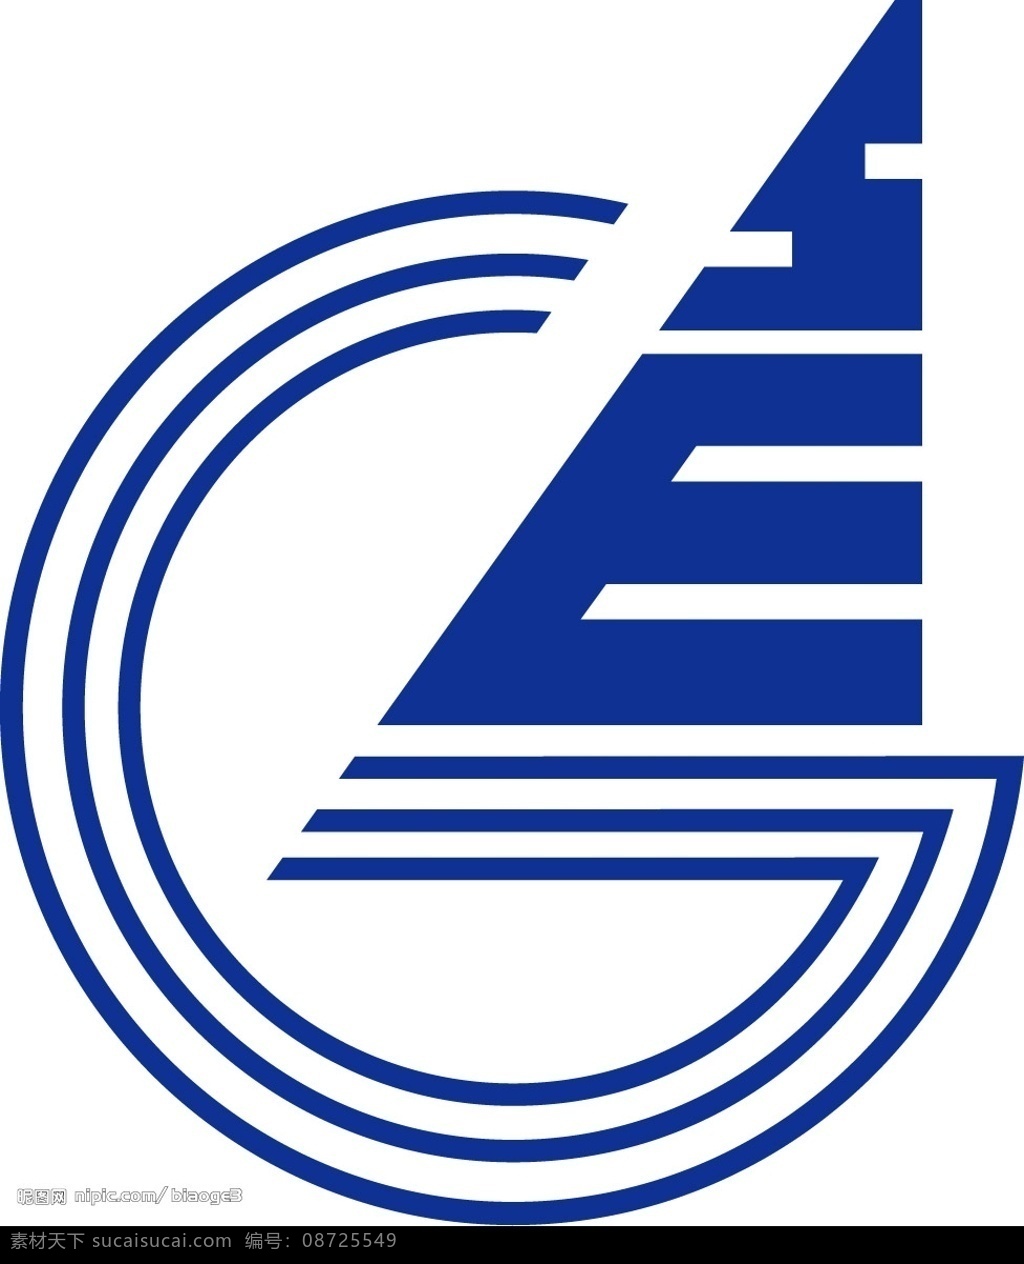 赛格 集团 logo 企业 标识标志图标 标志 矢量图库